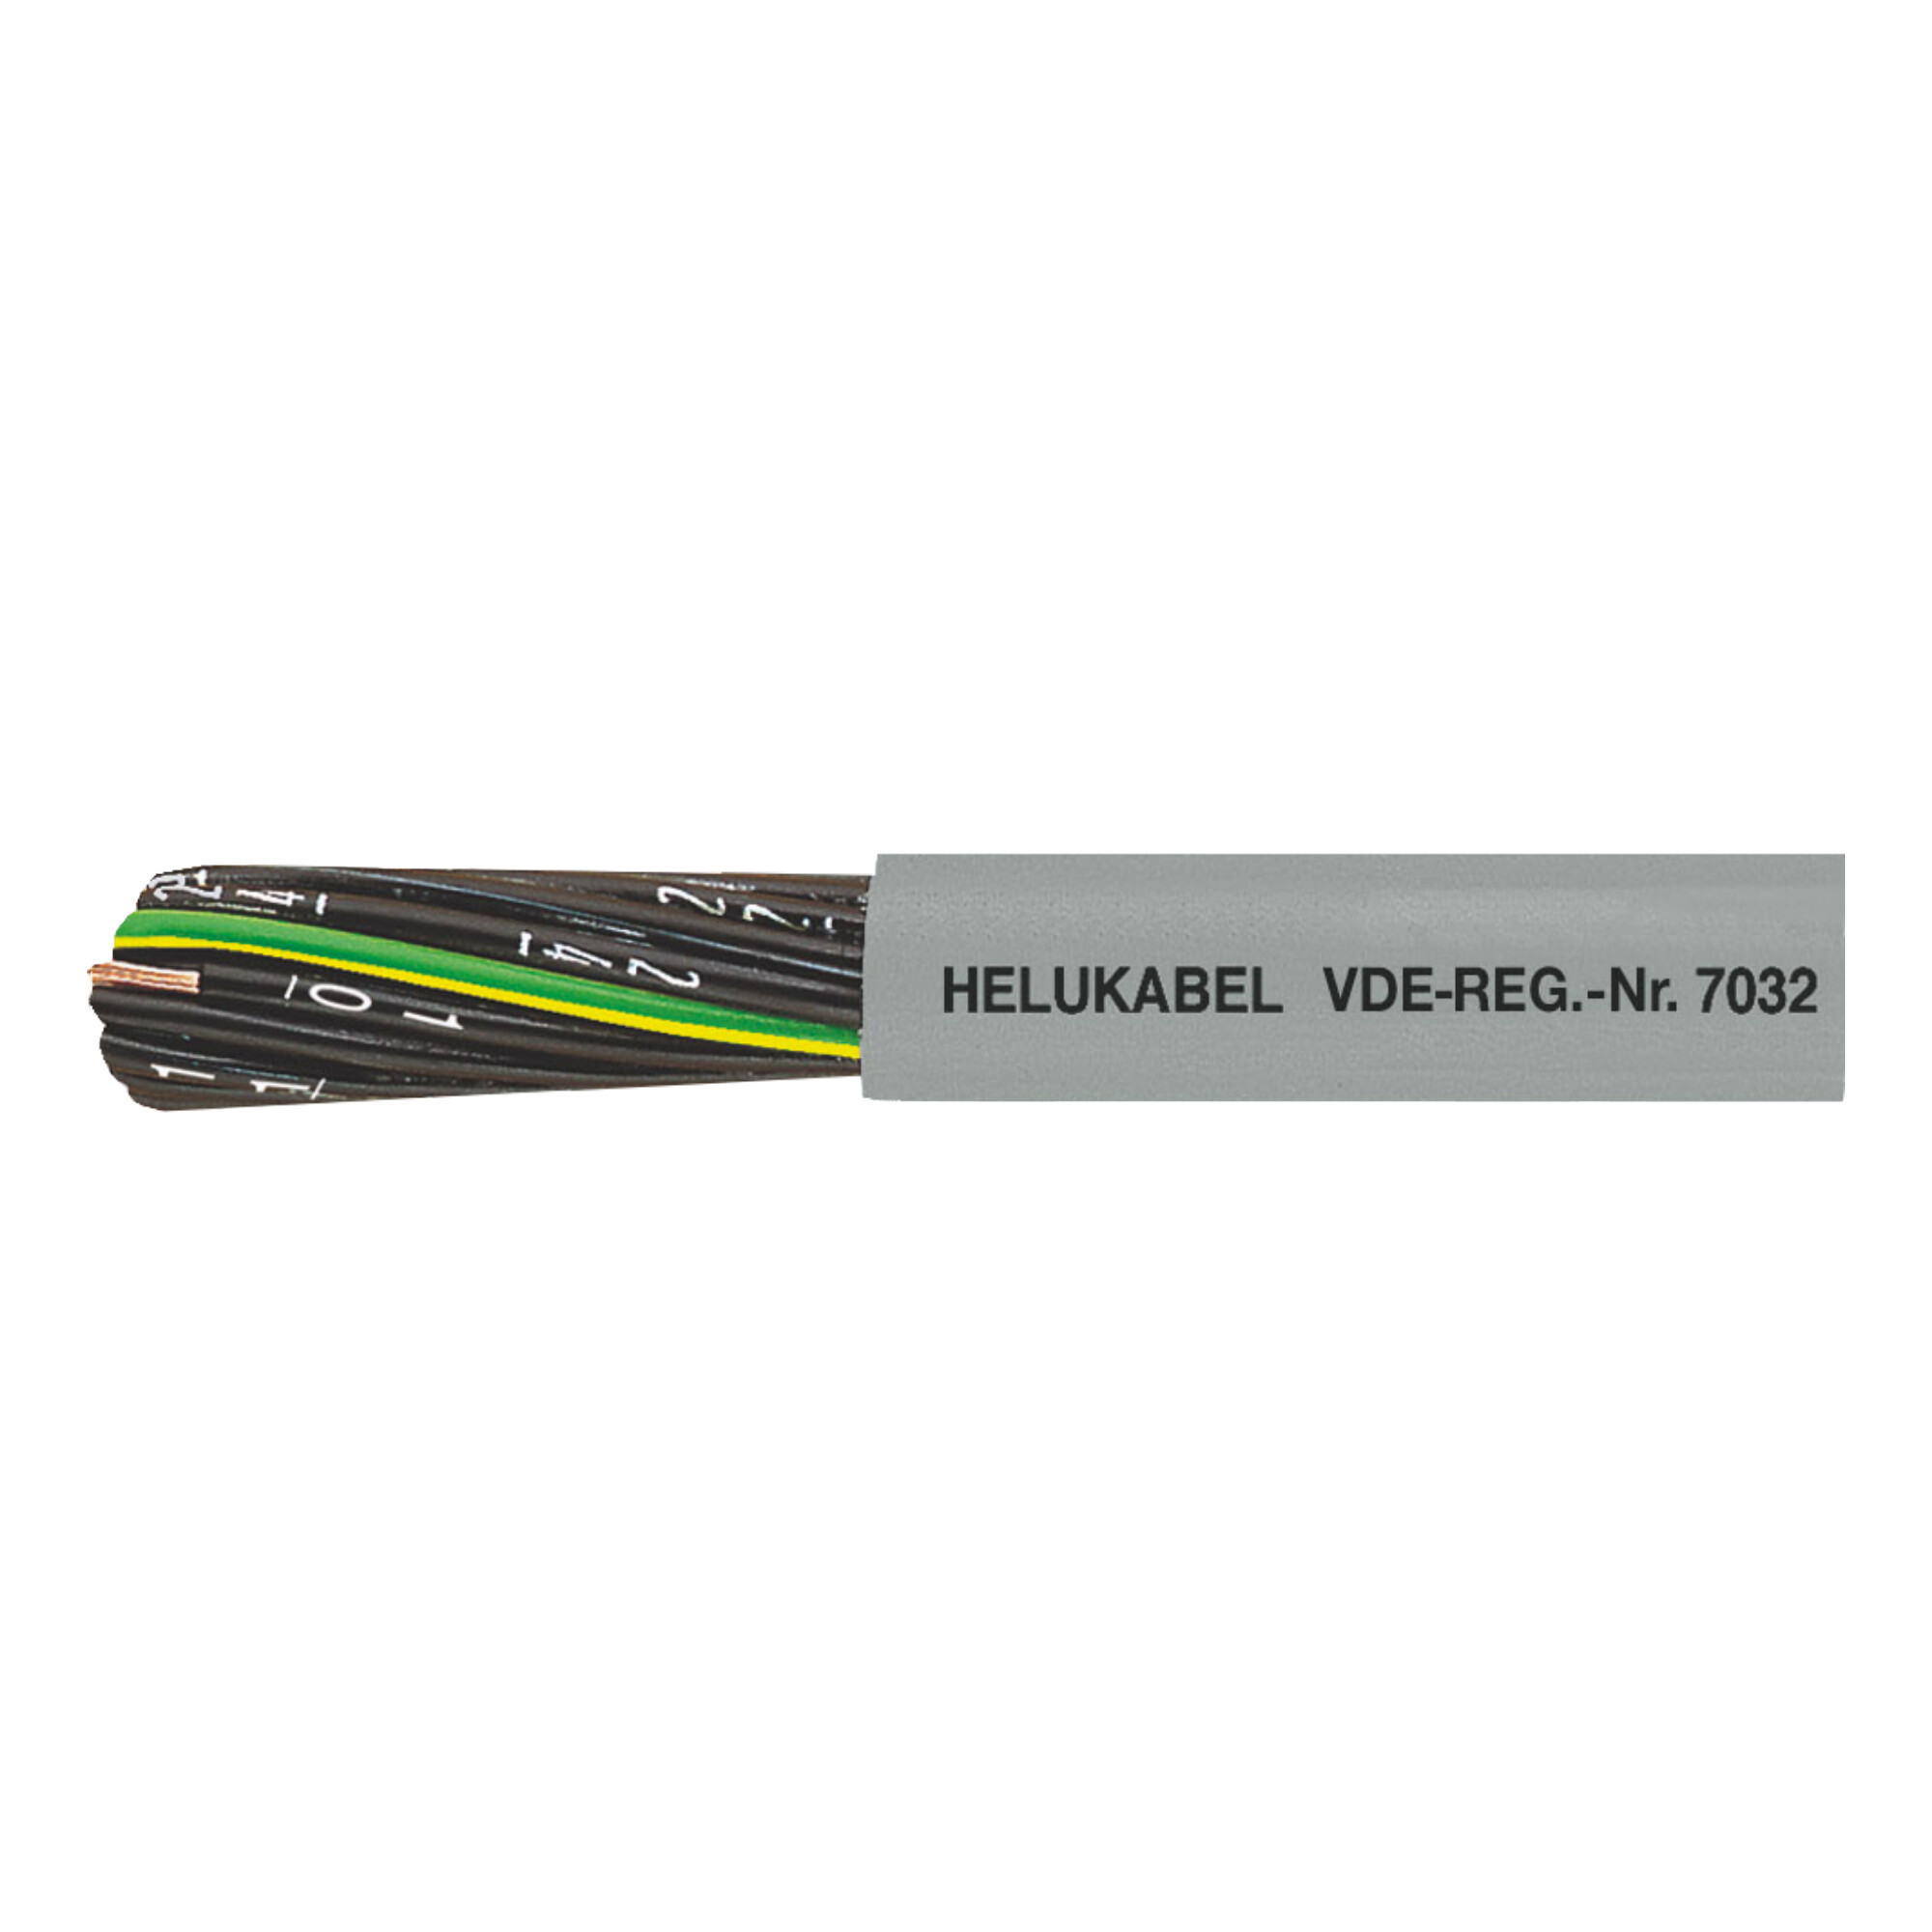 30-11053H0500 JZ-500 PVC buitenmantel en genummerde aders, incl. groen-geel.
Zonder groen/gele ader = serie OZ-500